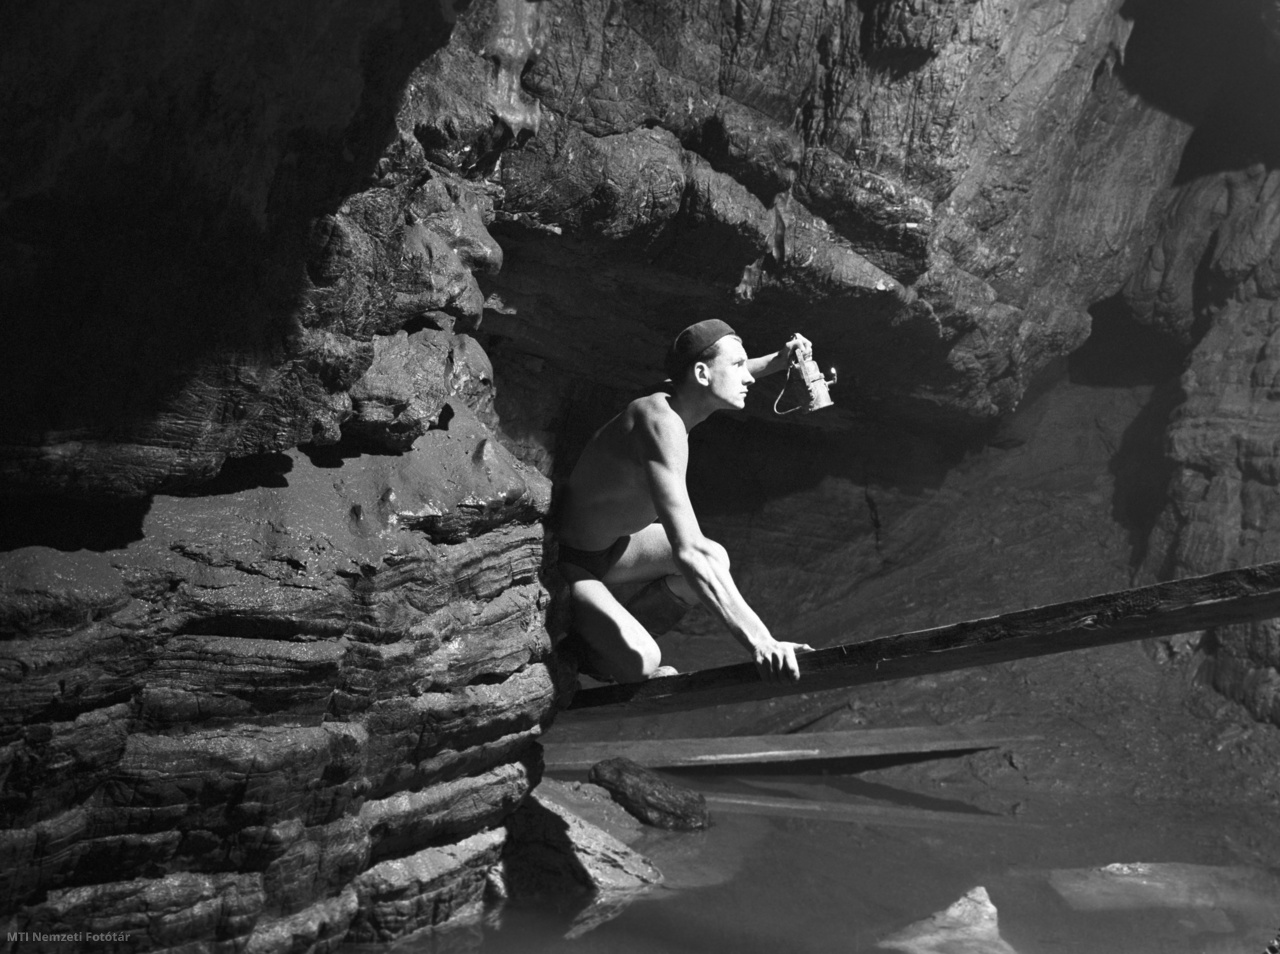 Orfű, 1960. augusztus 18. Hufnágel István egy pallón halad át a barlangban lévő víz fölött. A bányatechnikus a Baranya Intéző Bizottság barlangkutató csoportja tagjaként az orfűi karsztforrás föld alatti patak- és barlangrendszerét kutatja